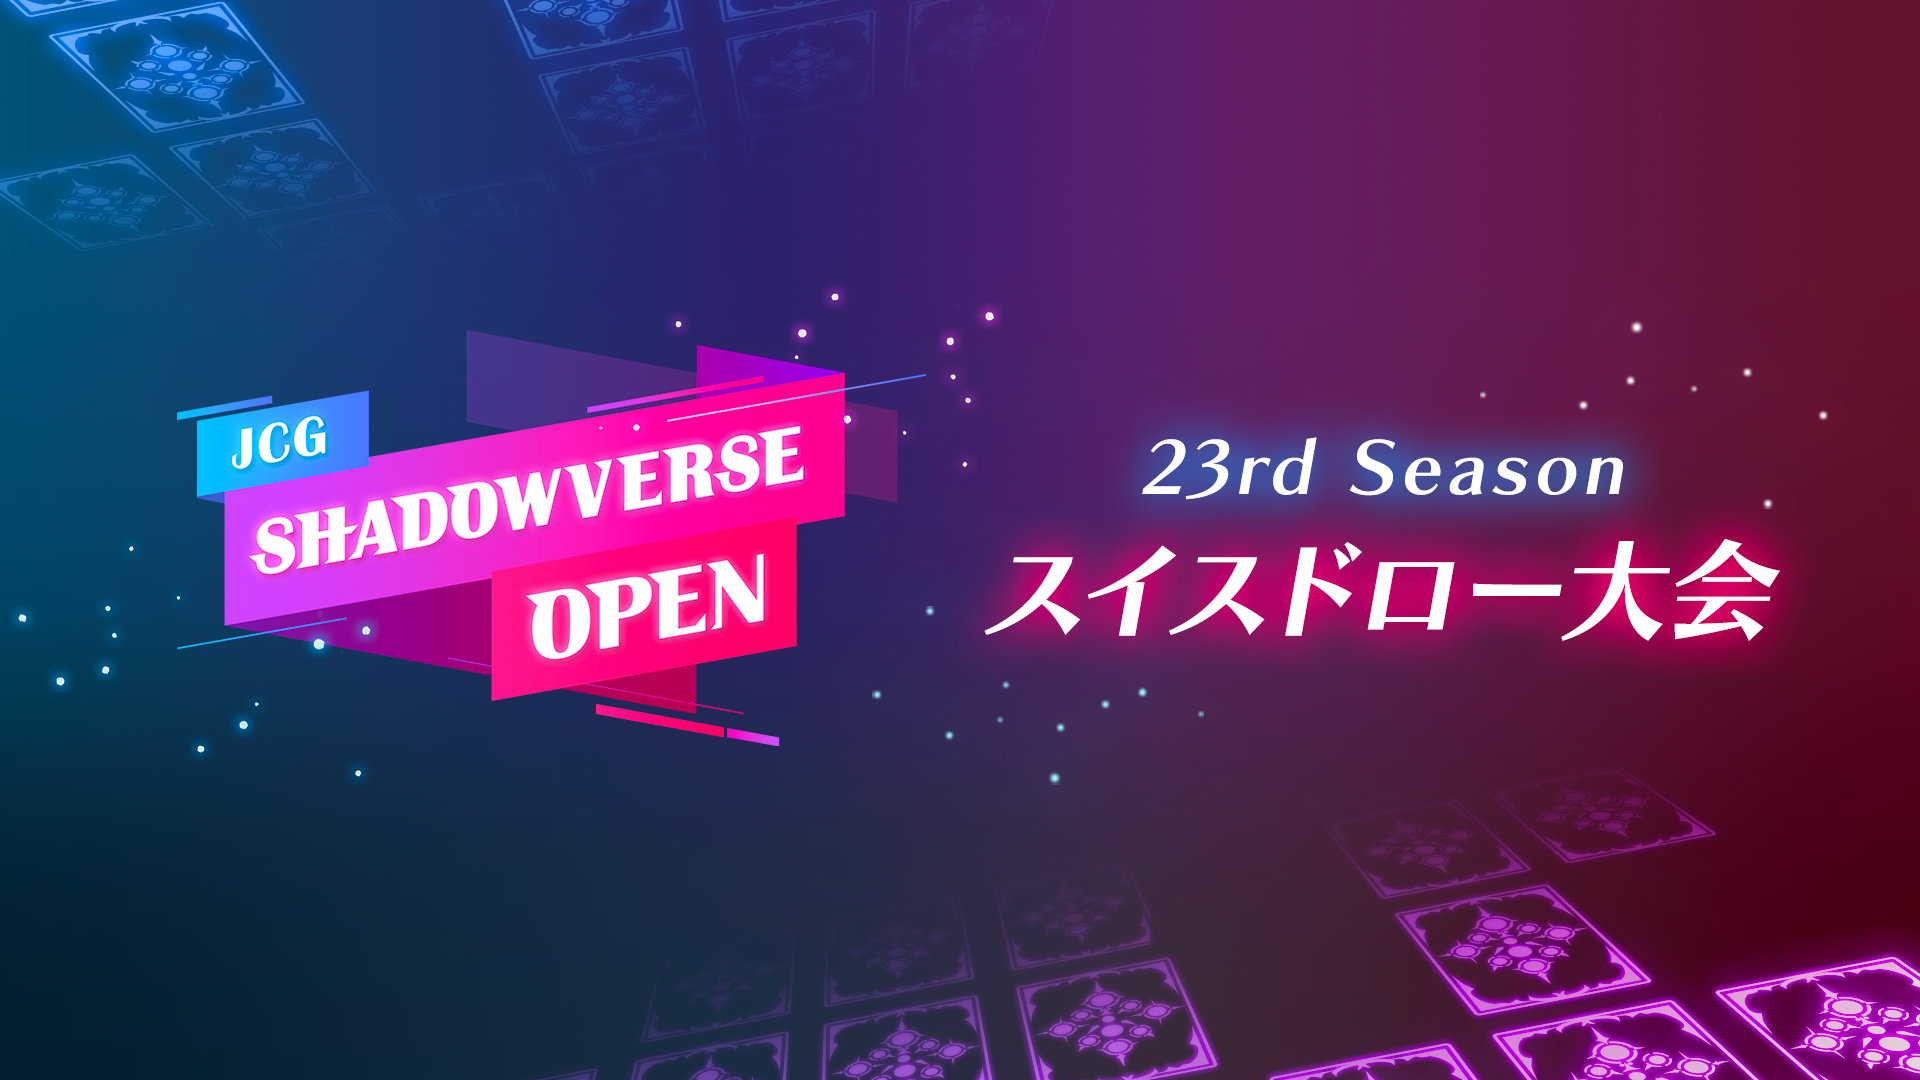 JCG Shadowverse Open スイスドロー大会 11/20 プレーオフ 結果速報